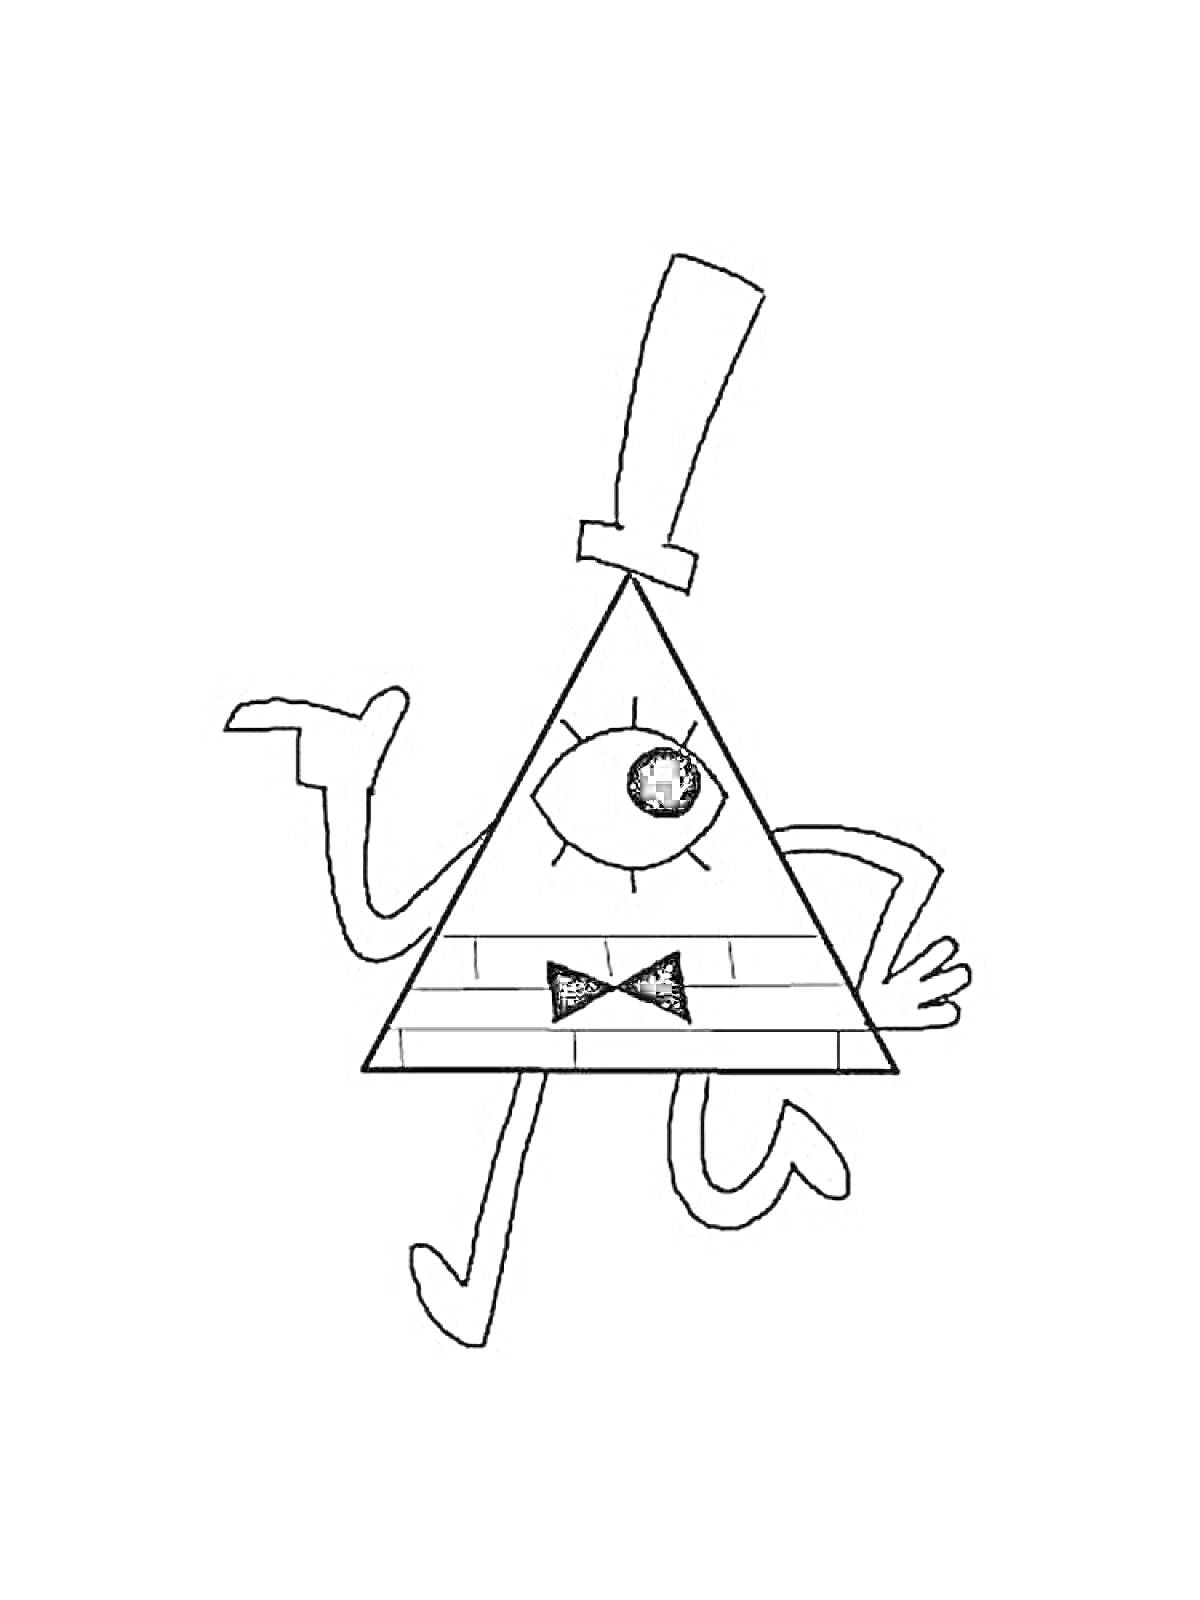 Раскраска Билл Шифр с рукой поднятой вверх, держащий трость, одно большое глазо в центре треугольного тела, цилиндрическая шляпа и бабочка на уровне туловища